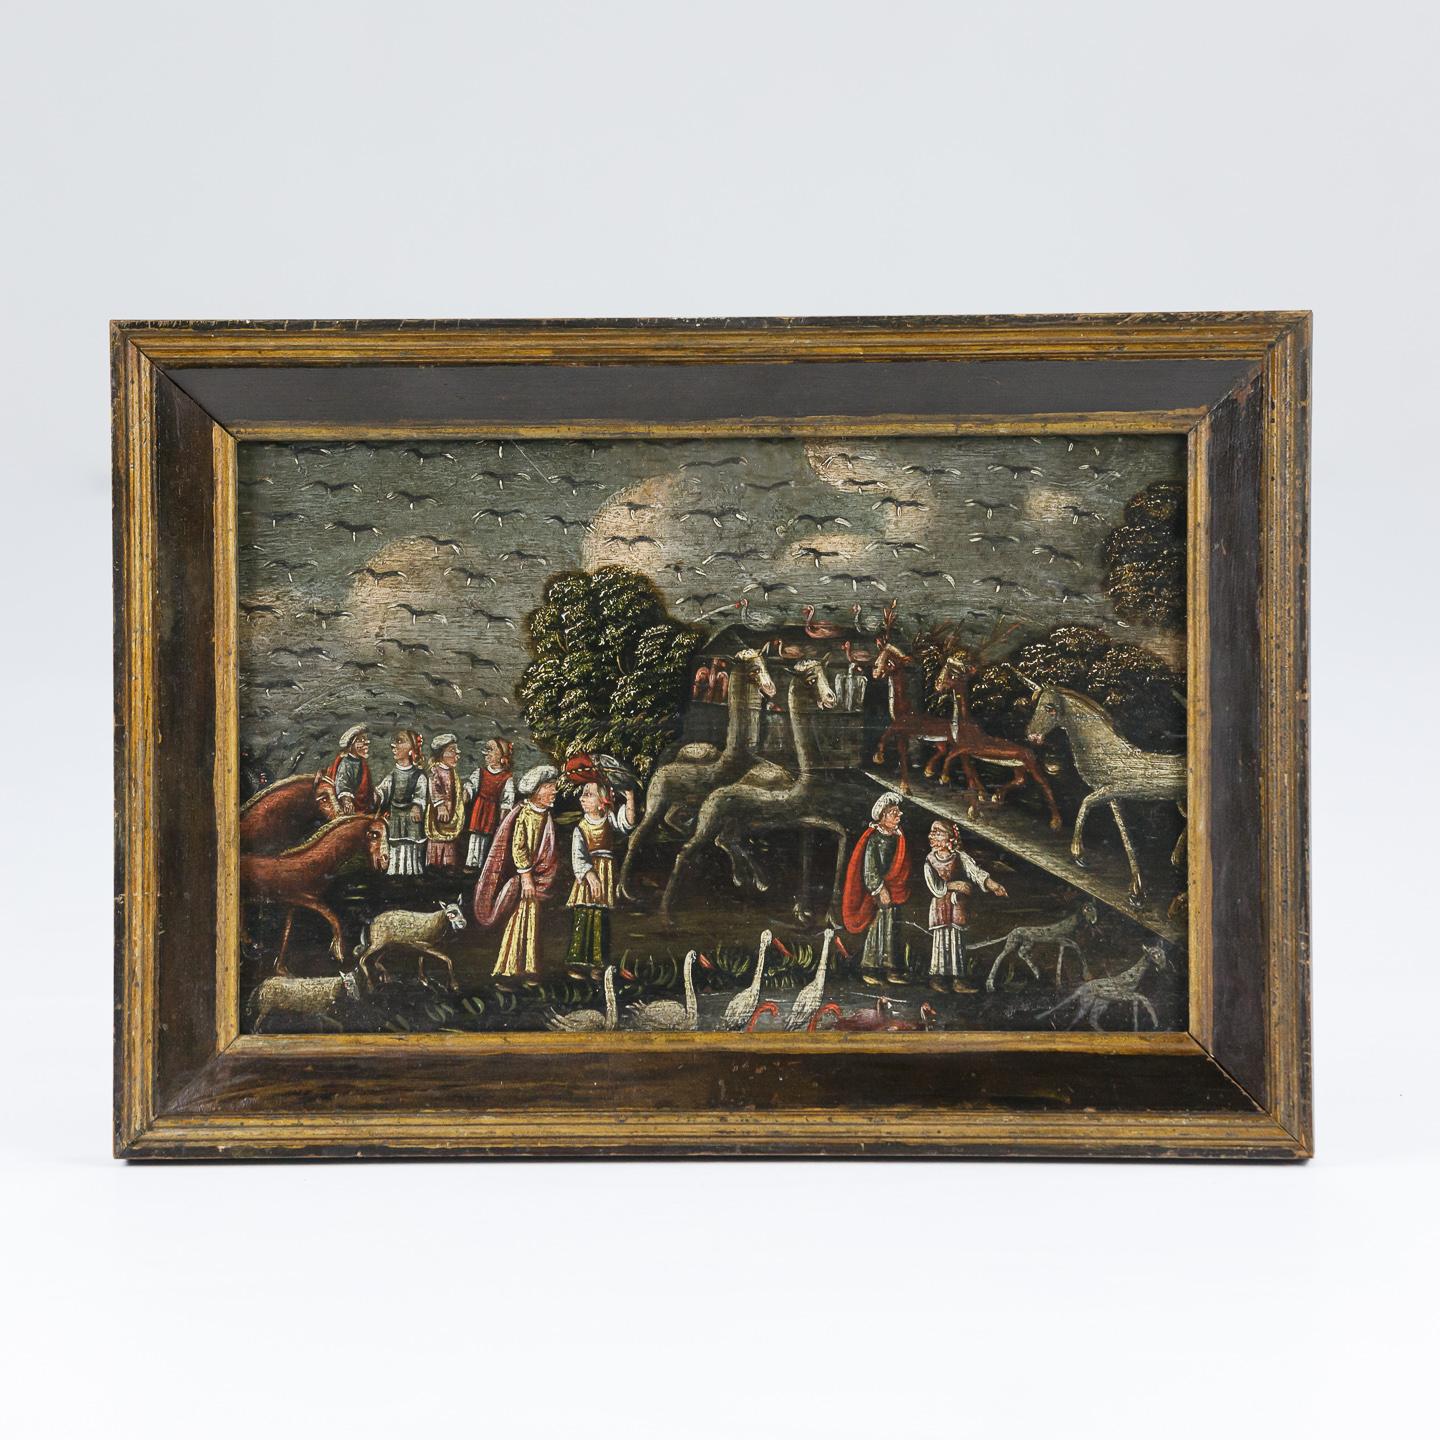 Huile primitive du 19e siècle sur panneau représentant l'Arche de Noé, cadre d'origine.
Les animaux qui montent à bord de l'Arche, y compris une licorne, donnent une impression merveilleuse d'excentricité.
Récemment nettoyé et restauré
France, vers